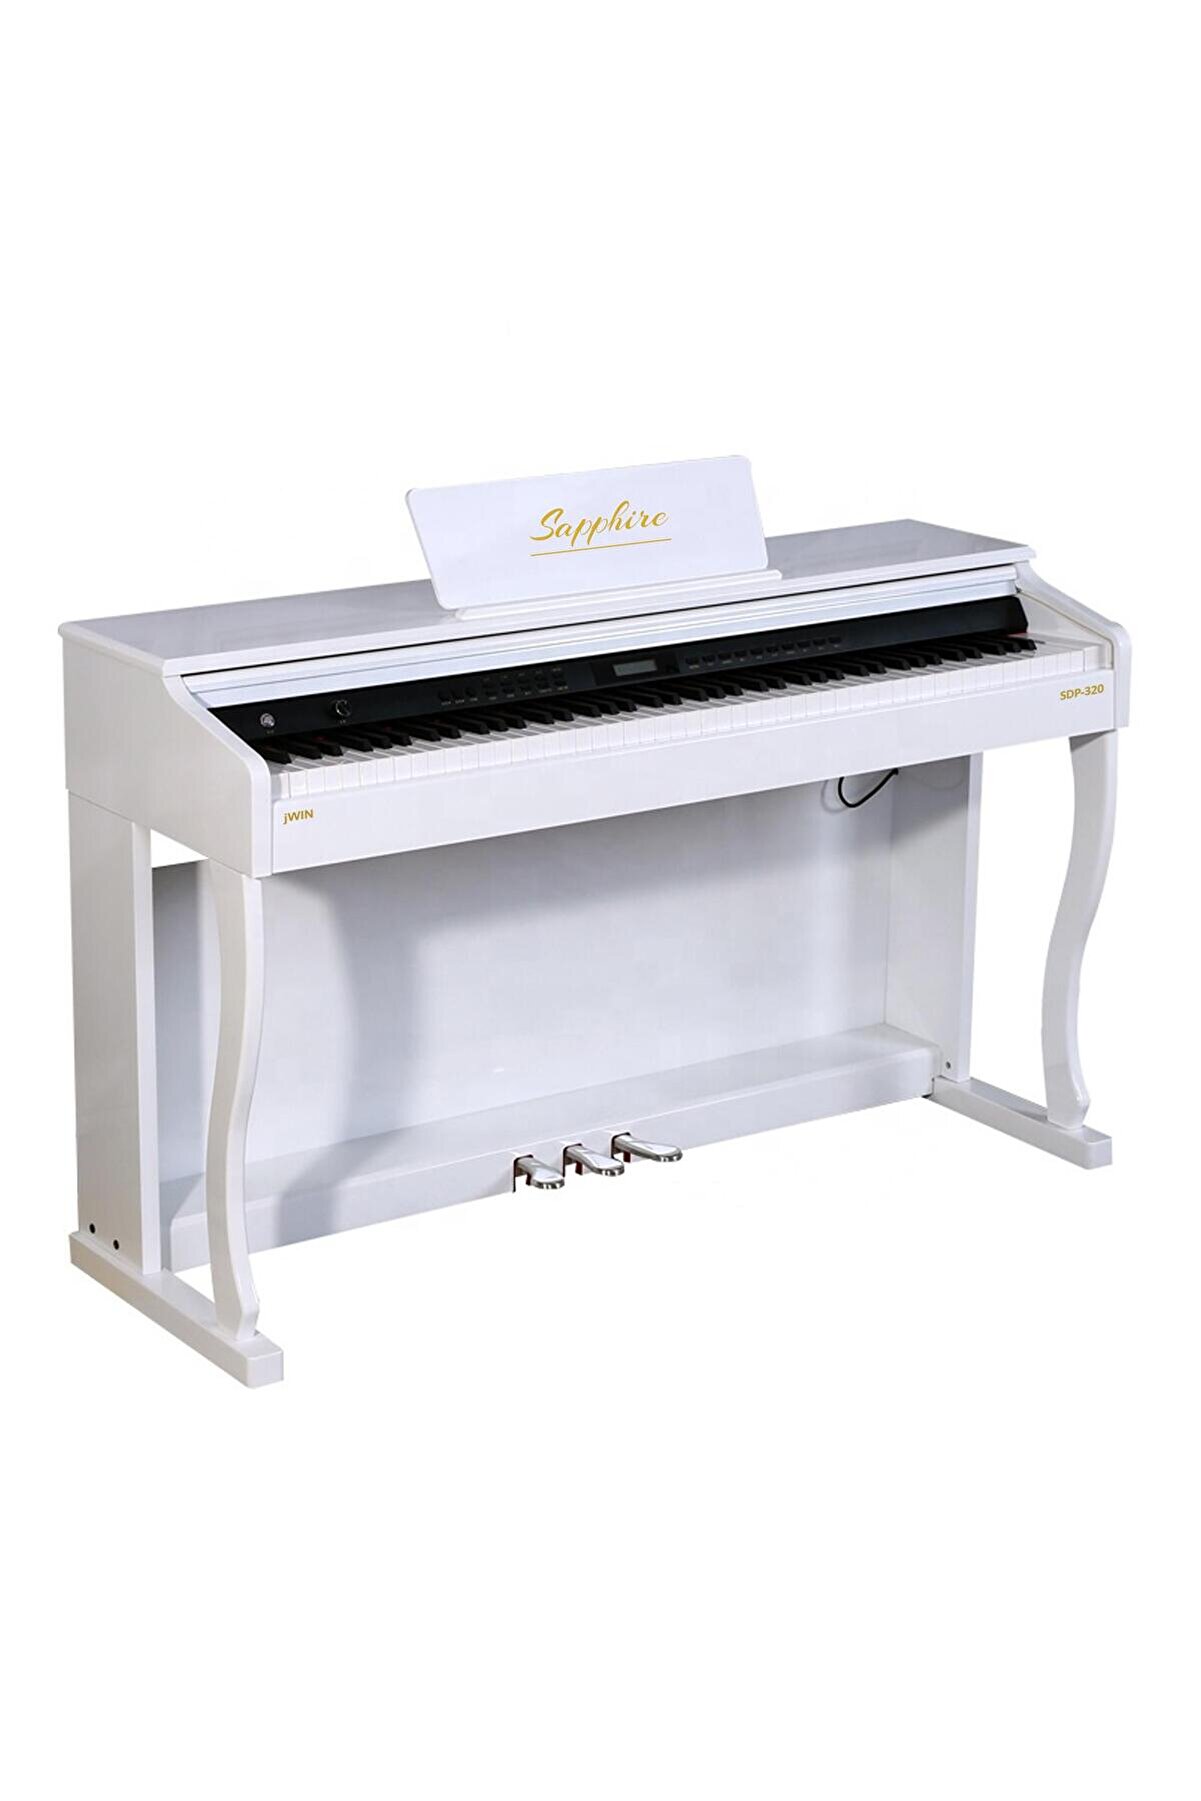 JWIN Sdp-320 Çekiç Aksiyonlu 88 Tuşlu Dijital Piyano - Beyaz